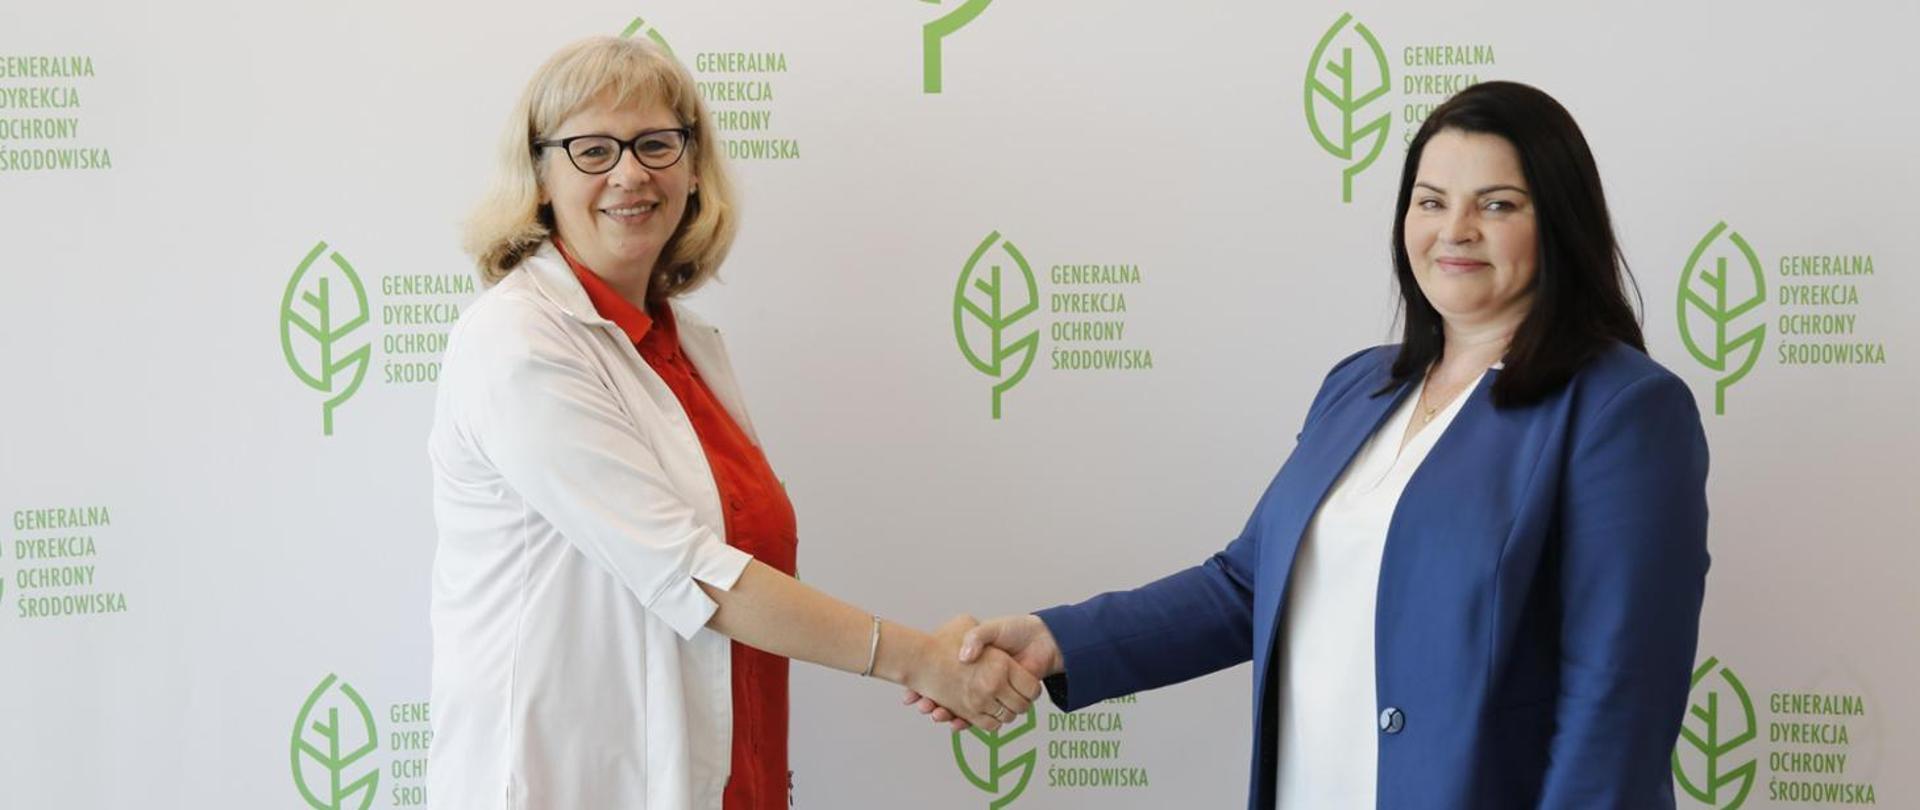 Na tle białej ściany z logotypem Generalnej Dyrekcji Ochrony Środowiska (zielony liść) stoją dwie uśmiechnięte kobiety. Ściskają sobie dłonie.